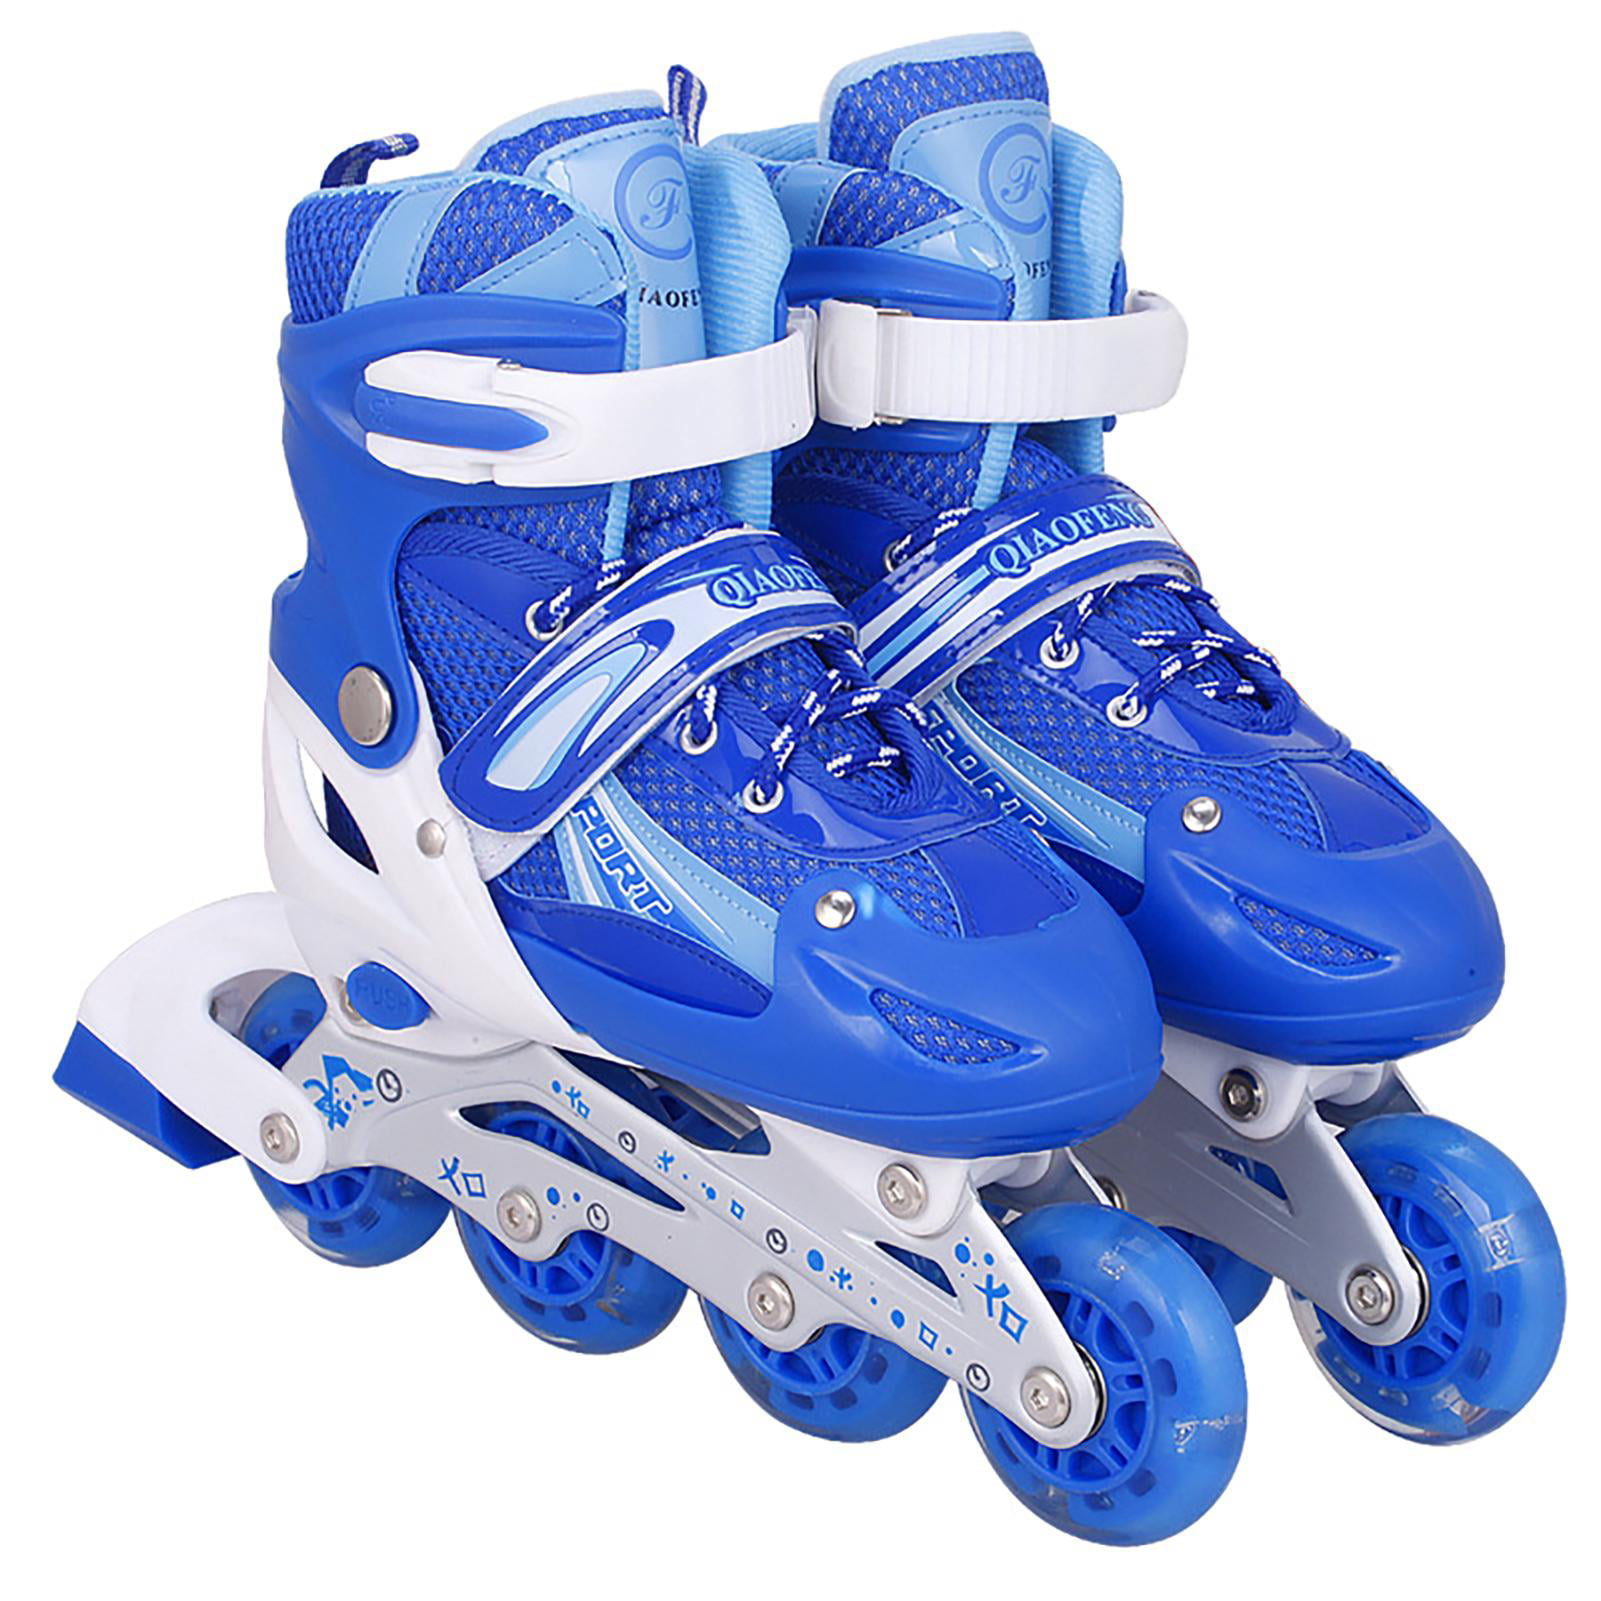 Details about   Adjustable Inline Roller Skates Blades Unisex Adult/Kid Breathable Flash c 30 